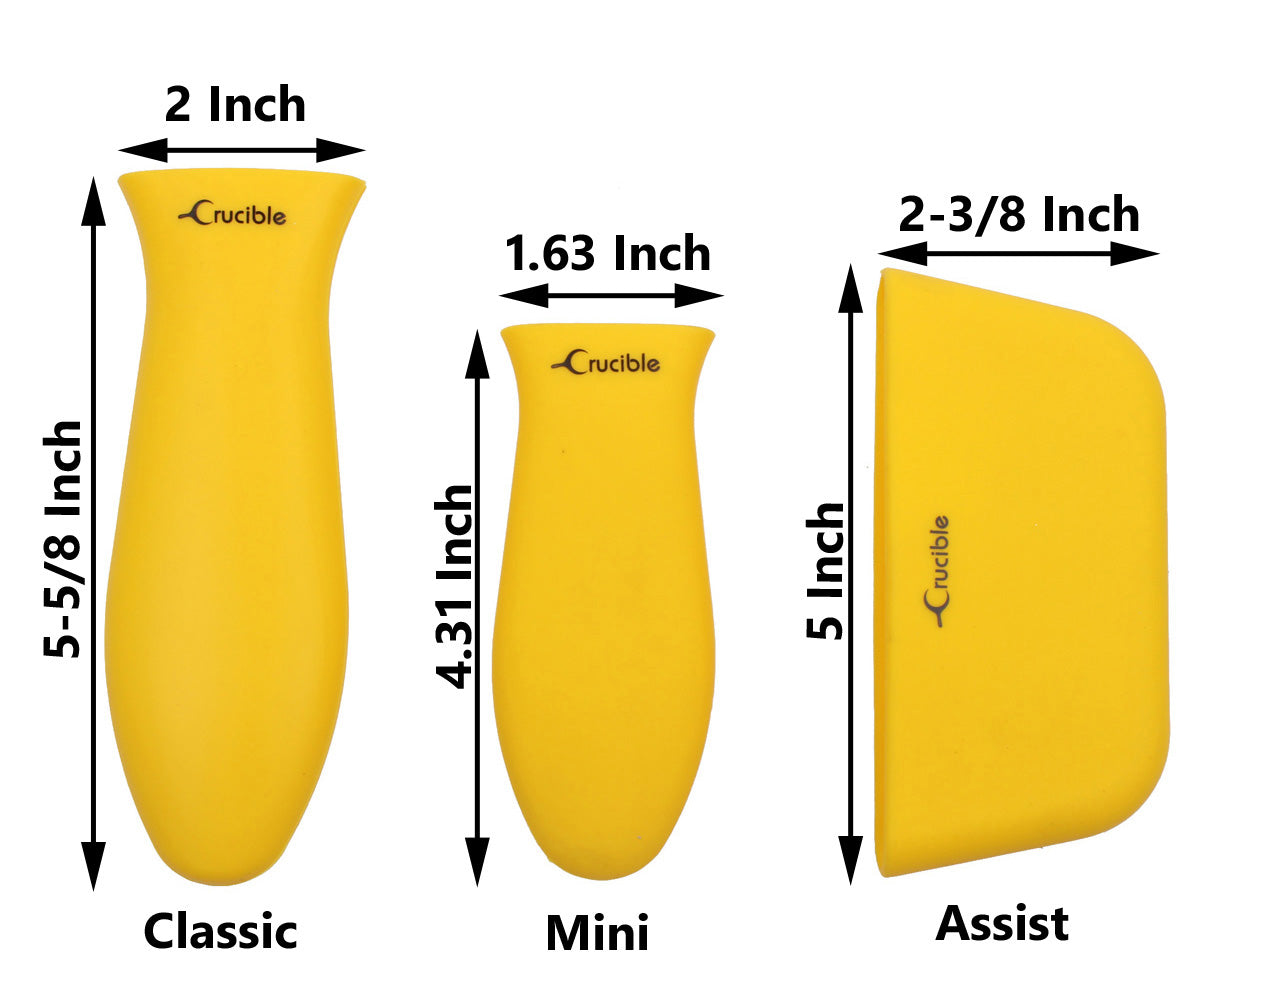 Soporte de mango caliente de silicona, agarraderas (paquete de 3 mezclas amarillas), empuñadura de manga, cubierta de mango